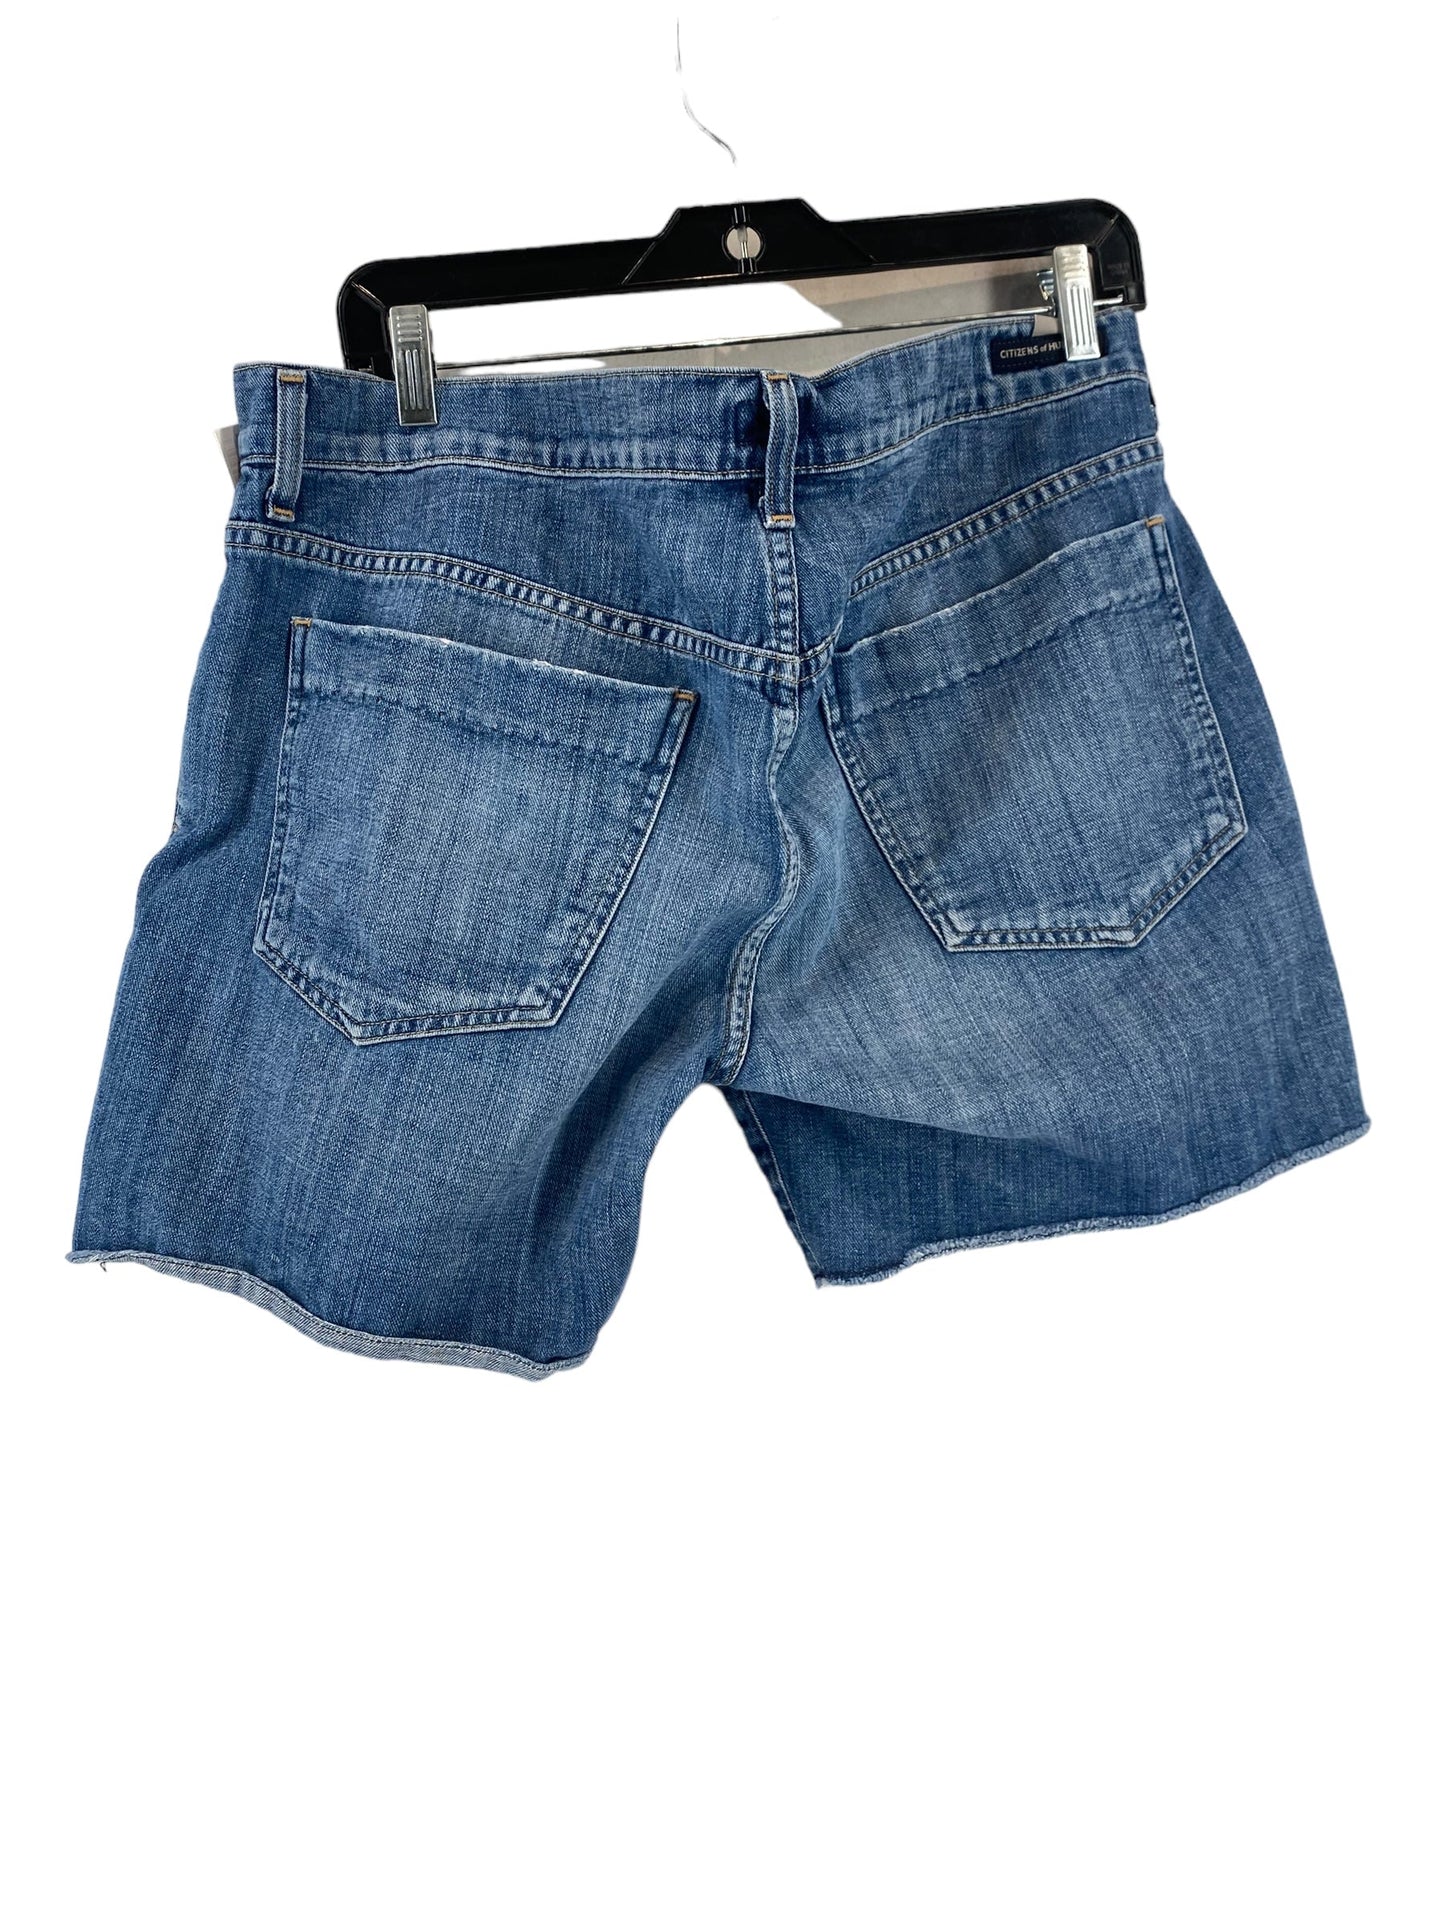 Blue Denim Shorts Clothes Mentor, Size 32